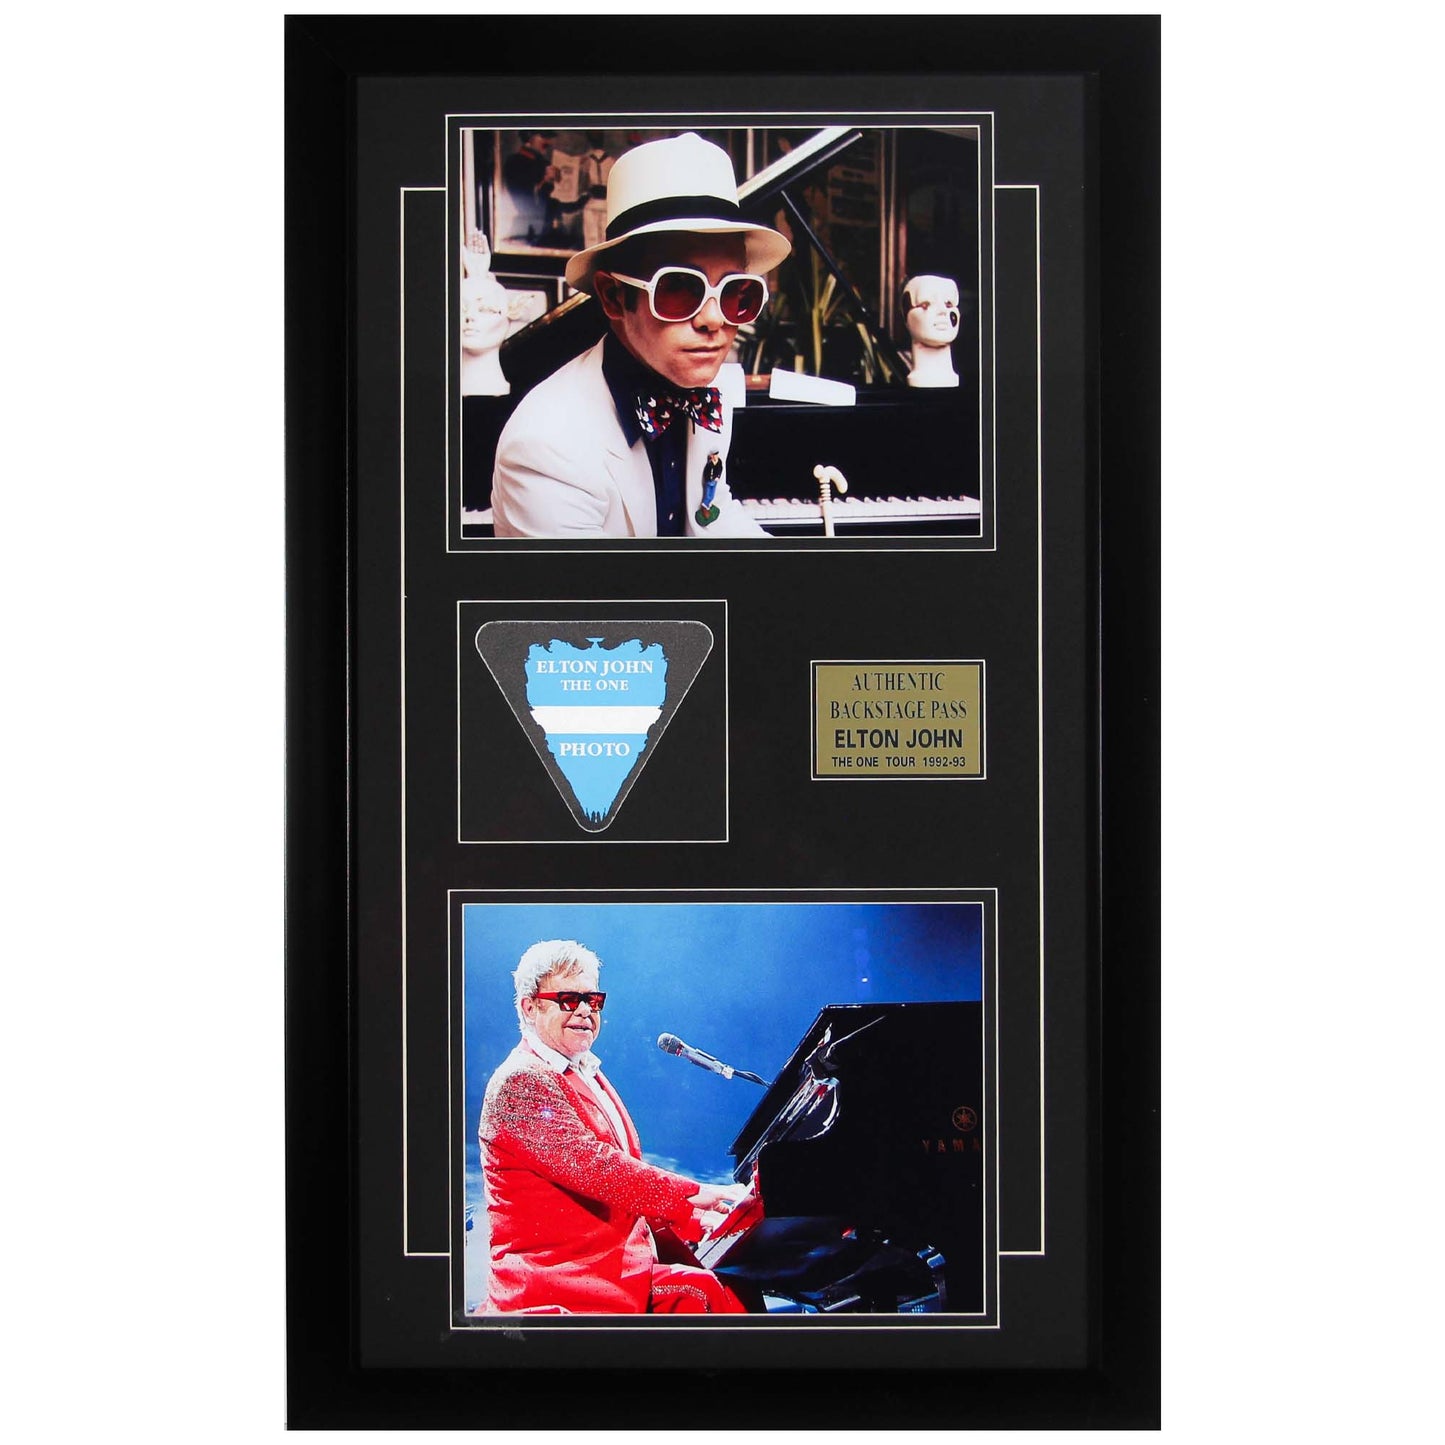 Elton John The One Tour 1992 - 93 Backstage Pass Memorabilia ZOOM